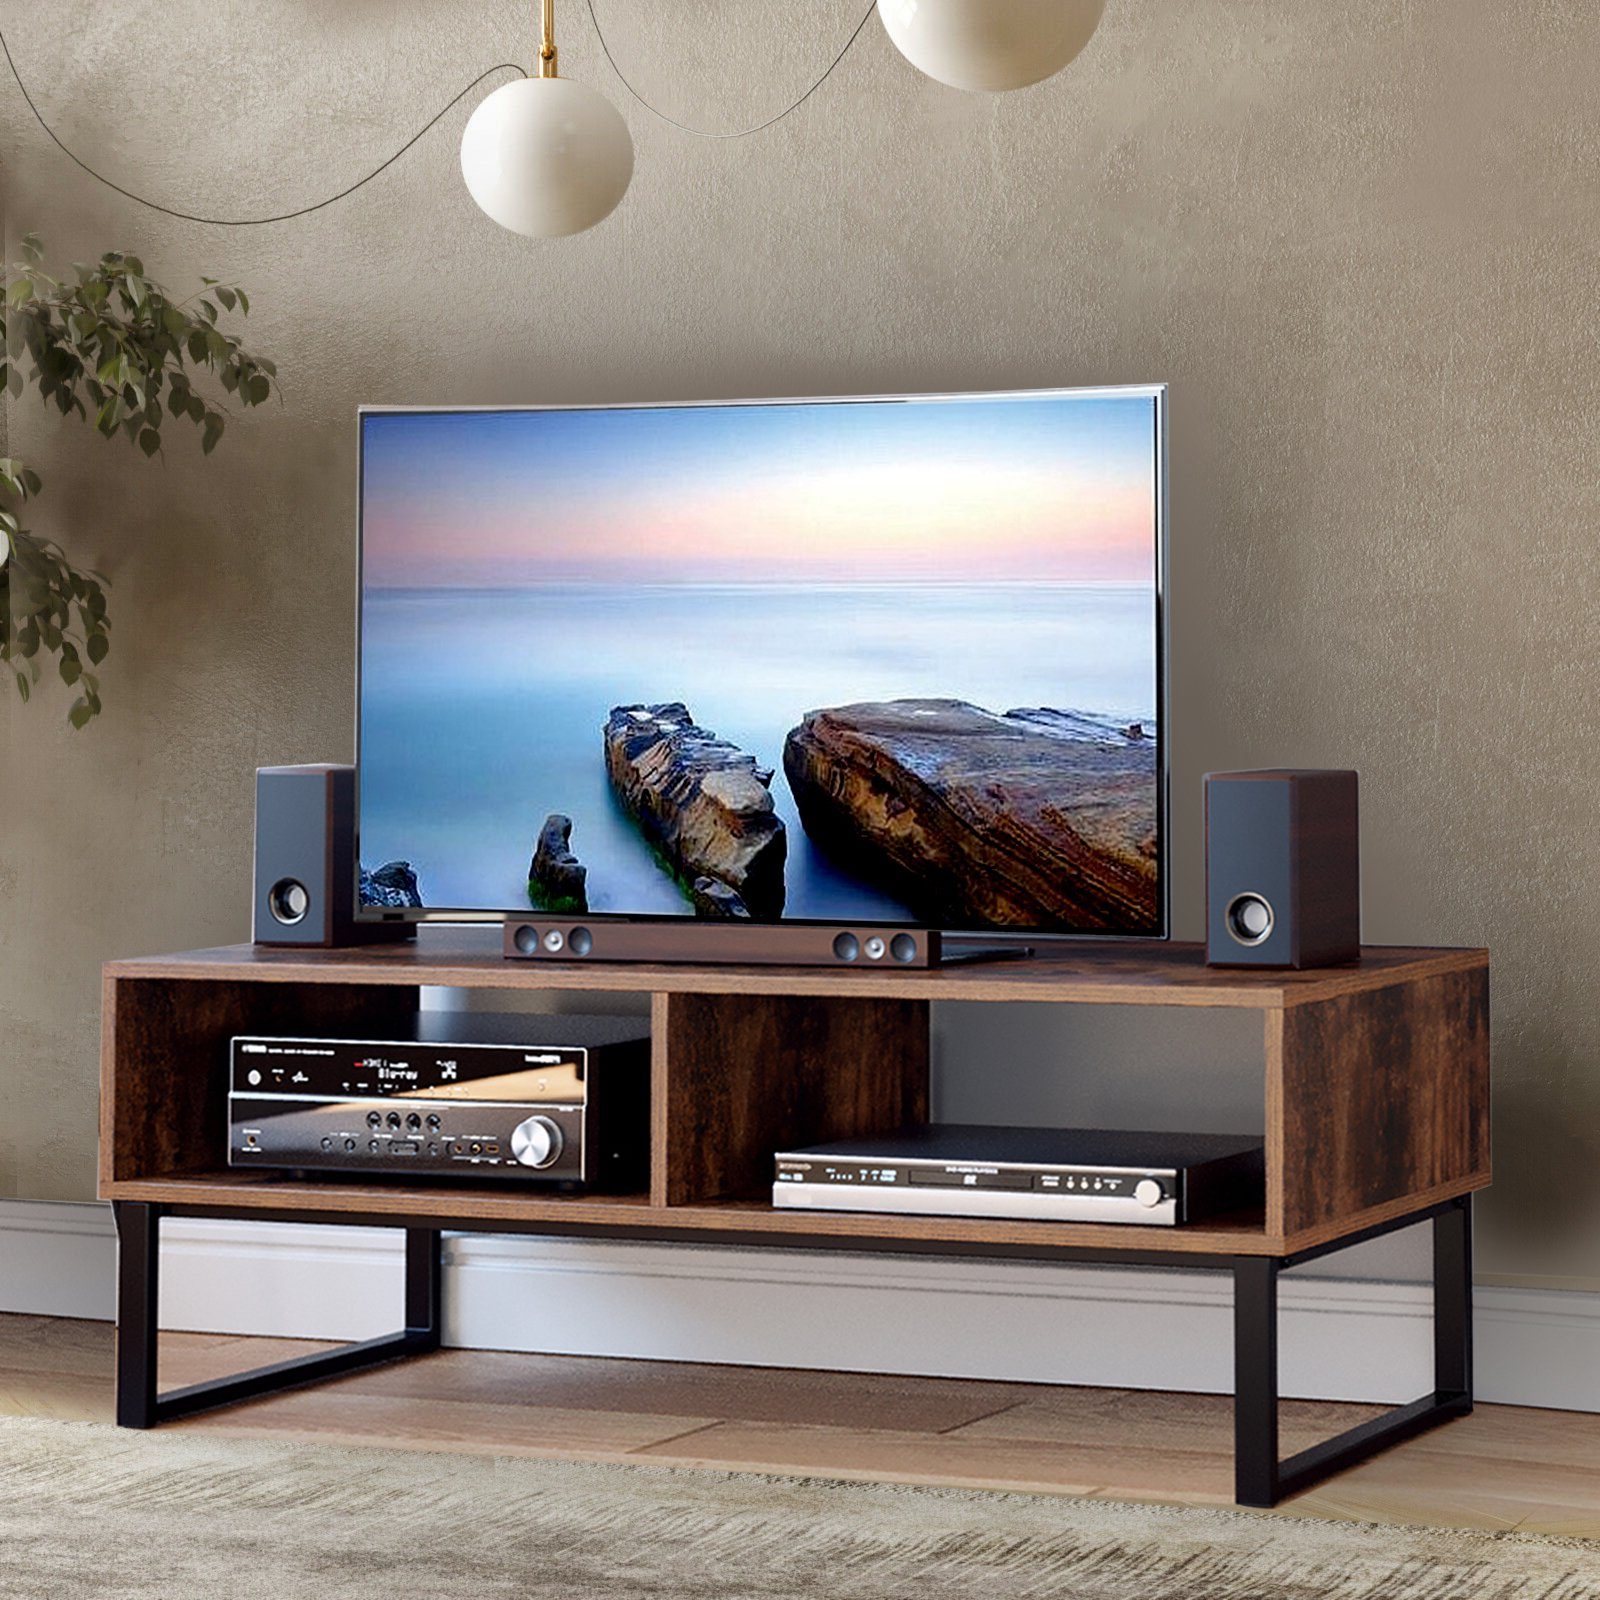 Homfa Lowboard, TV Schrank 108cm Fernsehtisch 2 Fächer Board Fernsehschrank